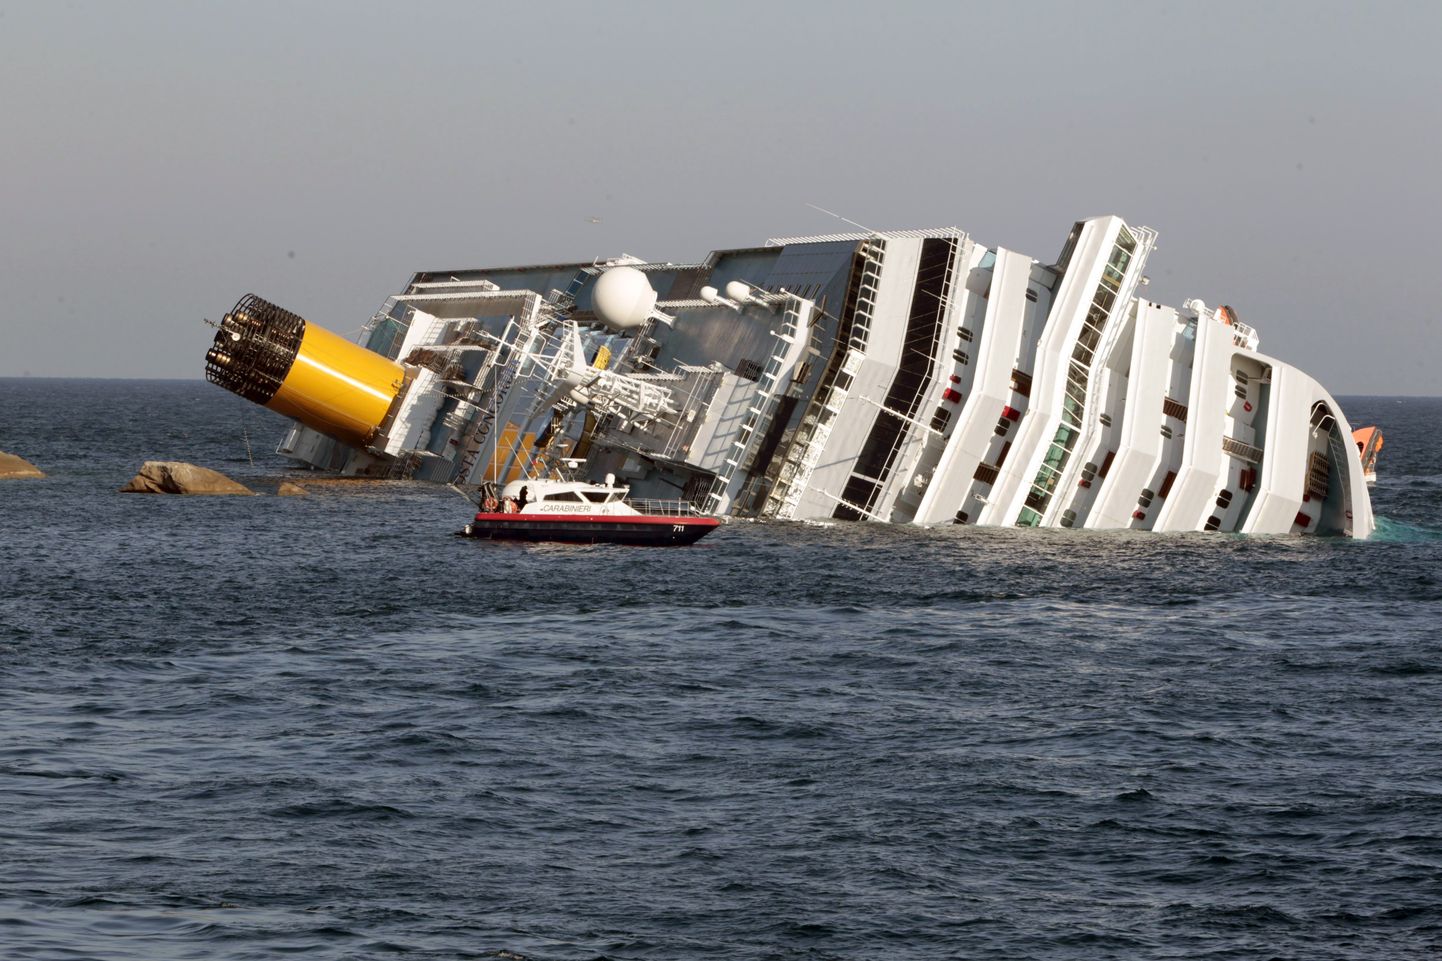 Kruiisilaeva Costa Concordia sillameeskond eesotsas kapten Francesco Schettinoga sõitis 13. jaanuaril 2012 Itaalia Toscana ranniku Giglio saare juures karidele. Pardasse tekkis 50 meetri laiune auk, vett hakkas  sisse voolama ja laev läks kreeni